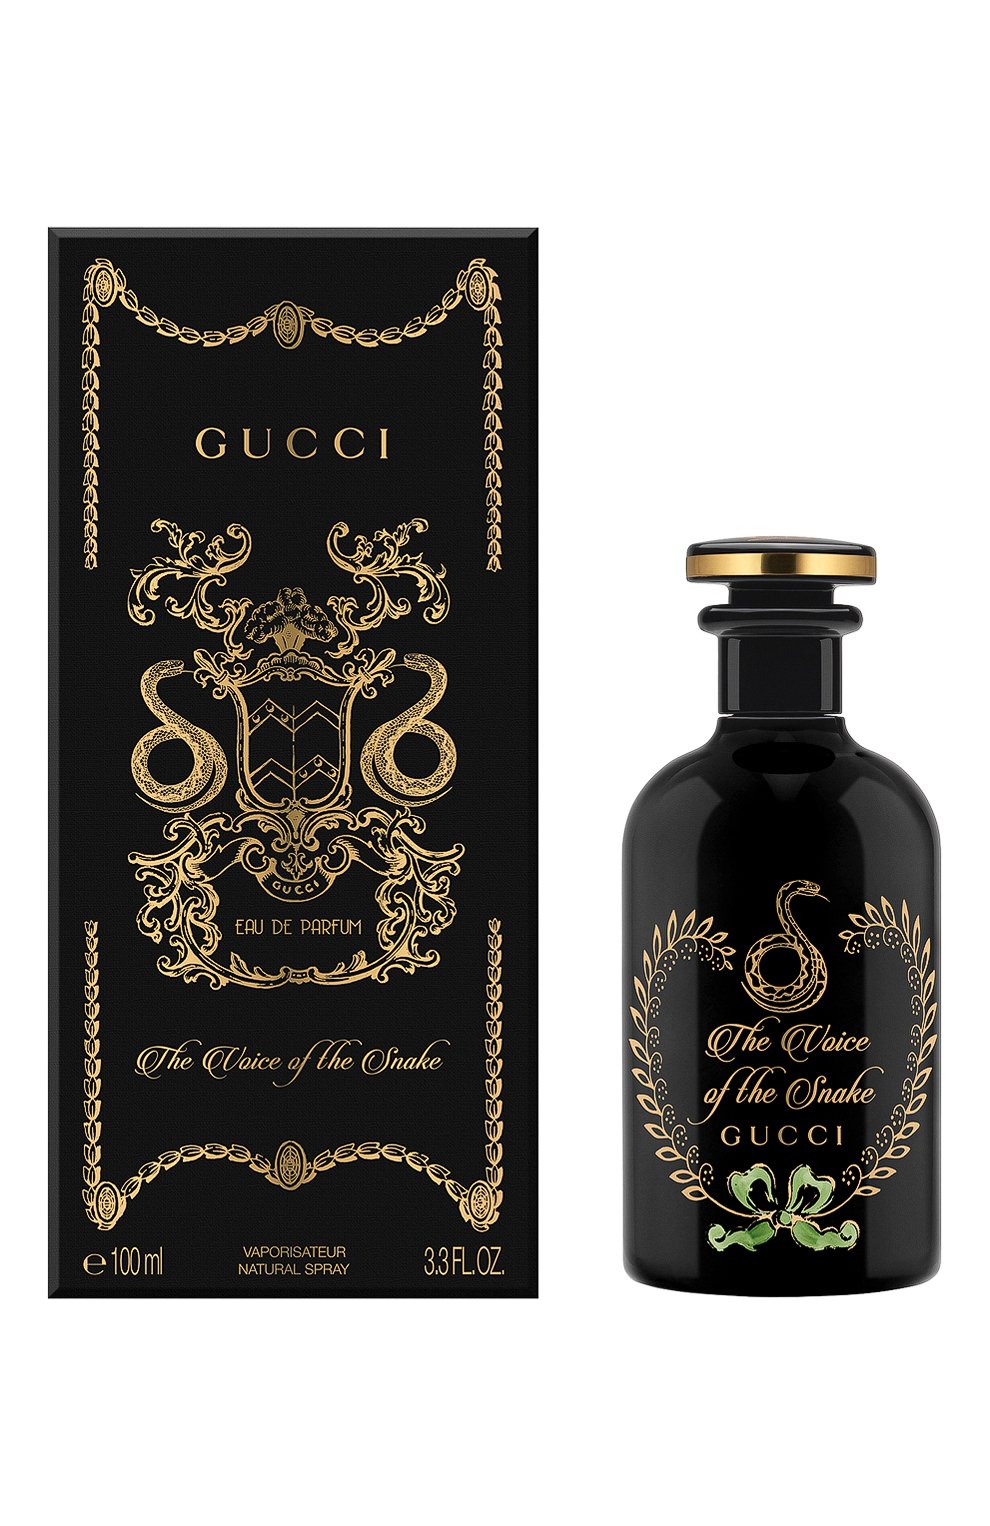 Gucci The Voice Of The Snake Eau de Parfum